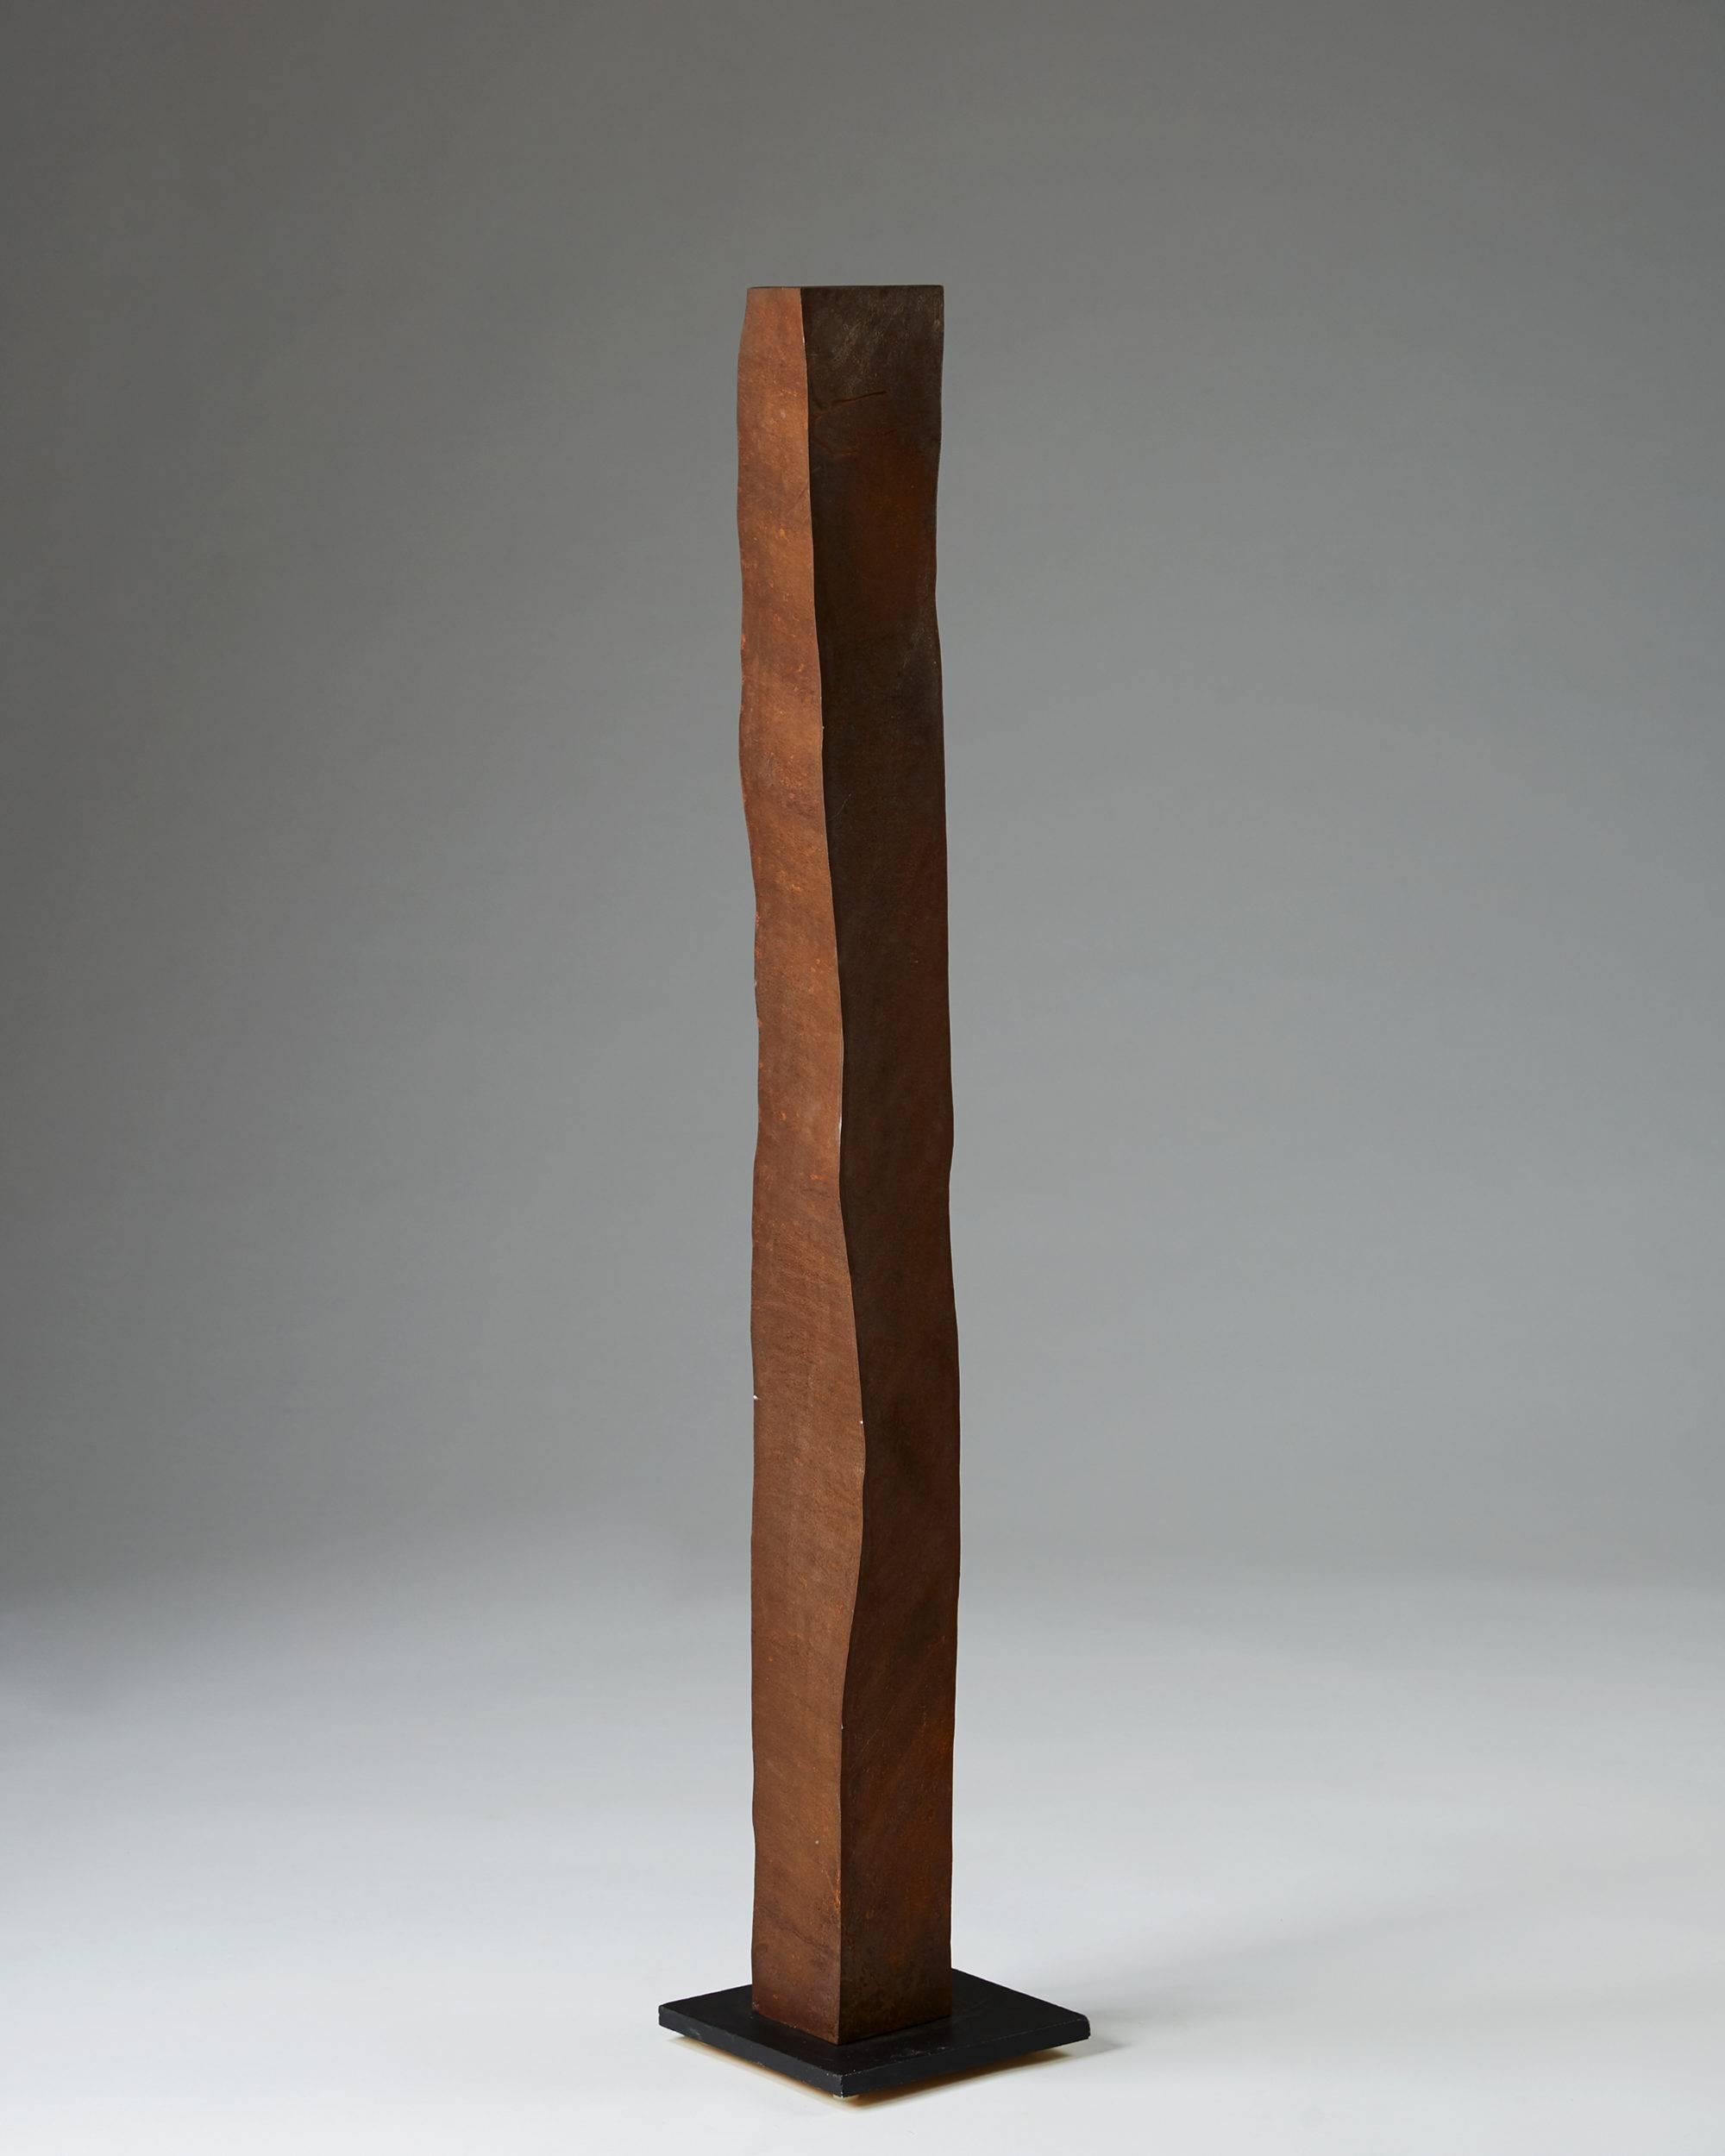 Sculpture by Peter Bonnén, 
Denmark, 2000s.

Oxidized cortén-steel. Signed.

Measures: H 127 cm/ 4' 2 3/8